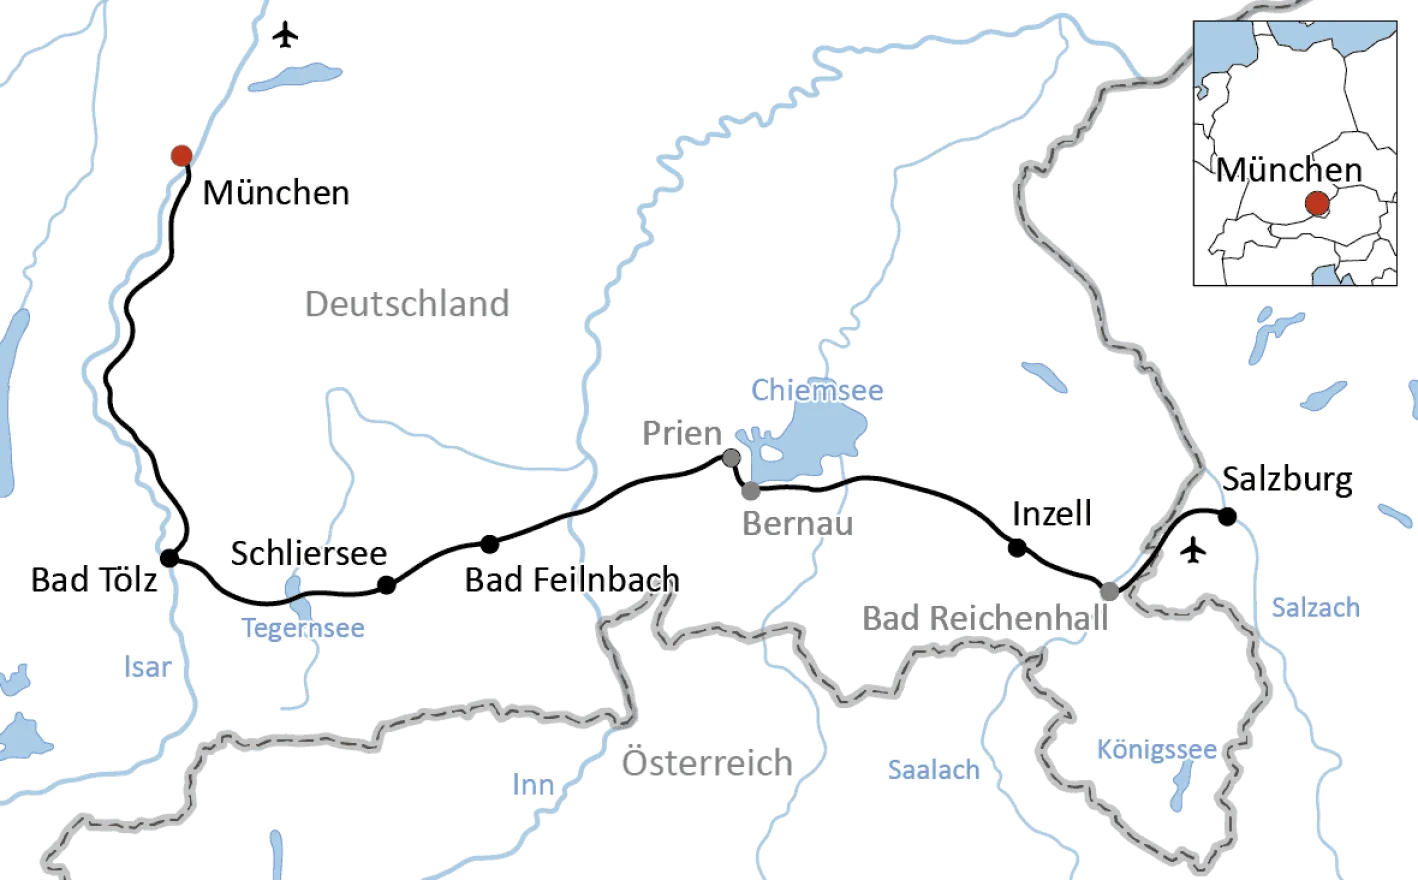 Bike tour from Munich to Salzburg